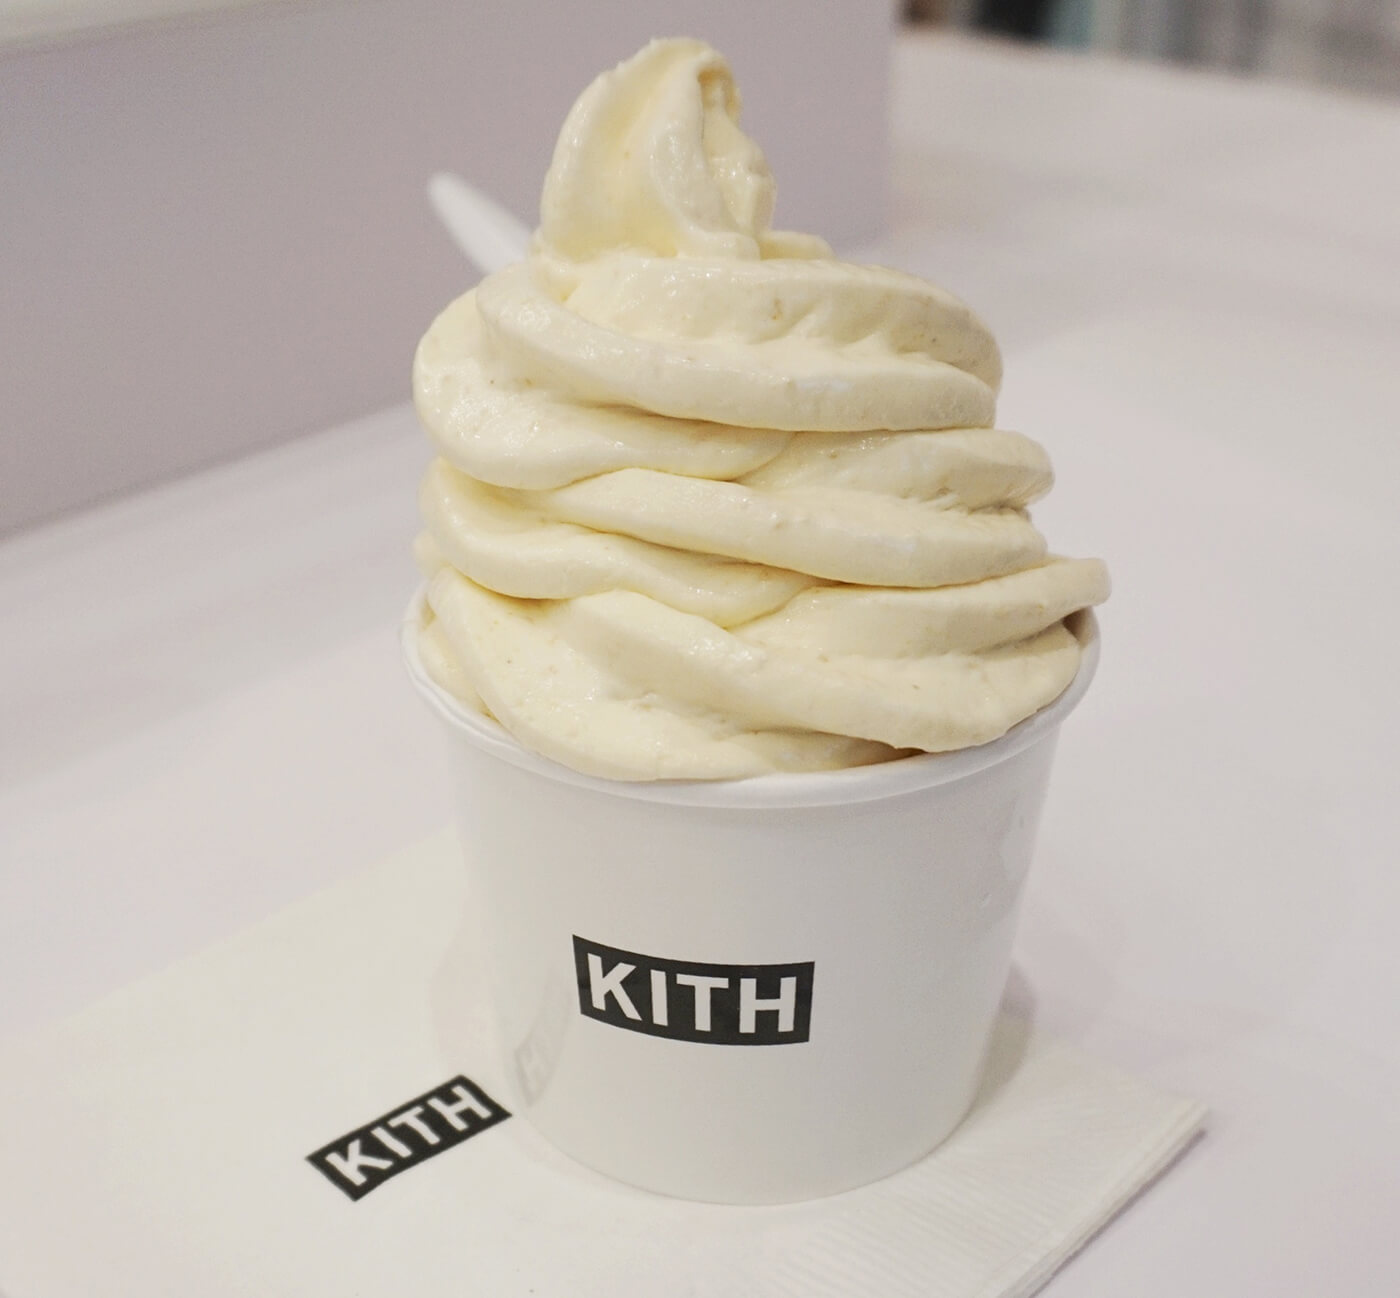 KITH treats ice cream